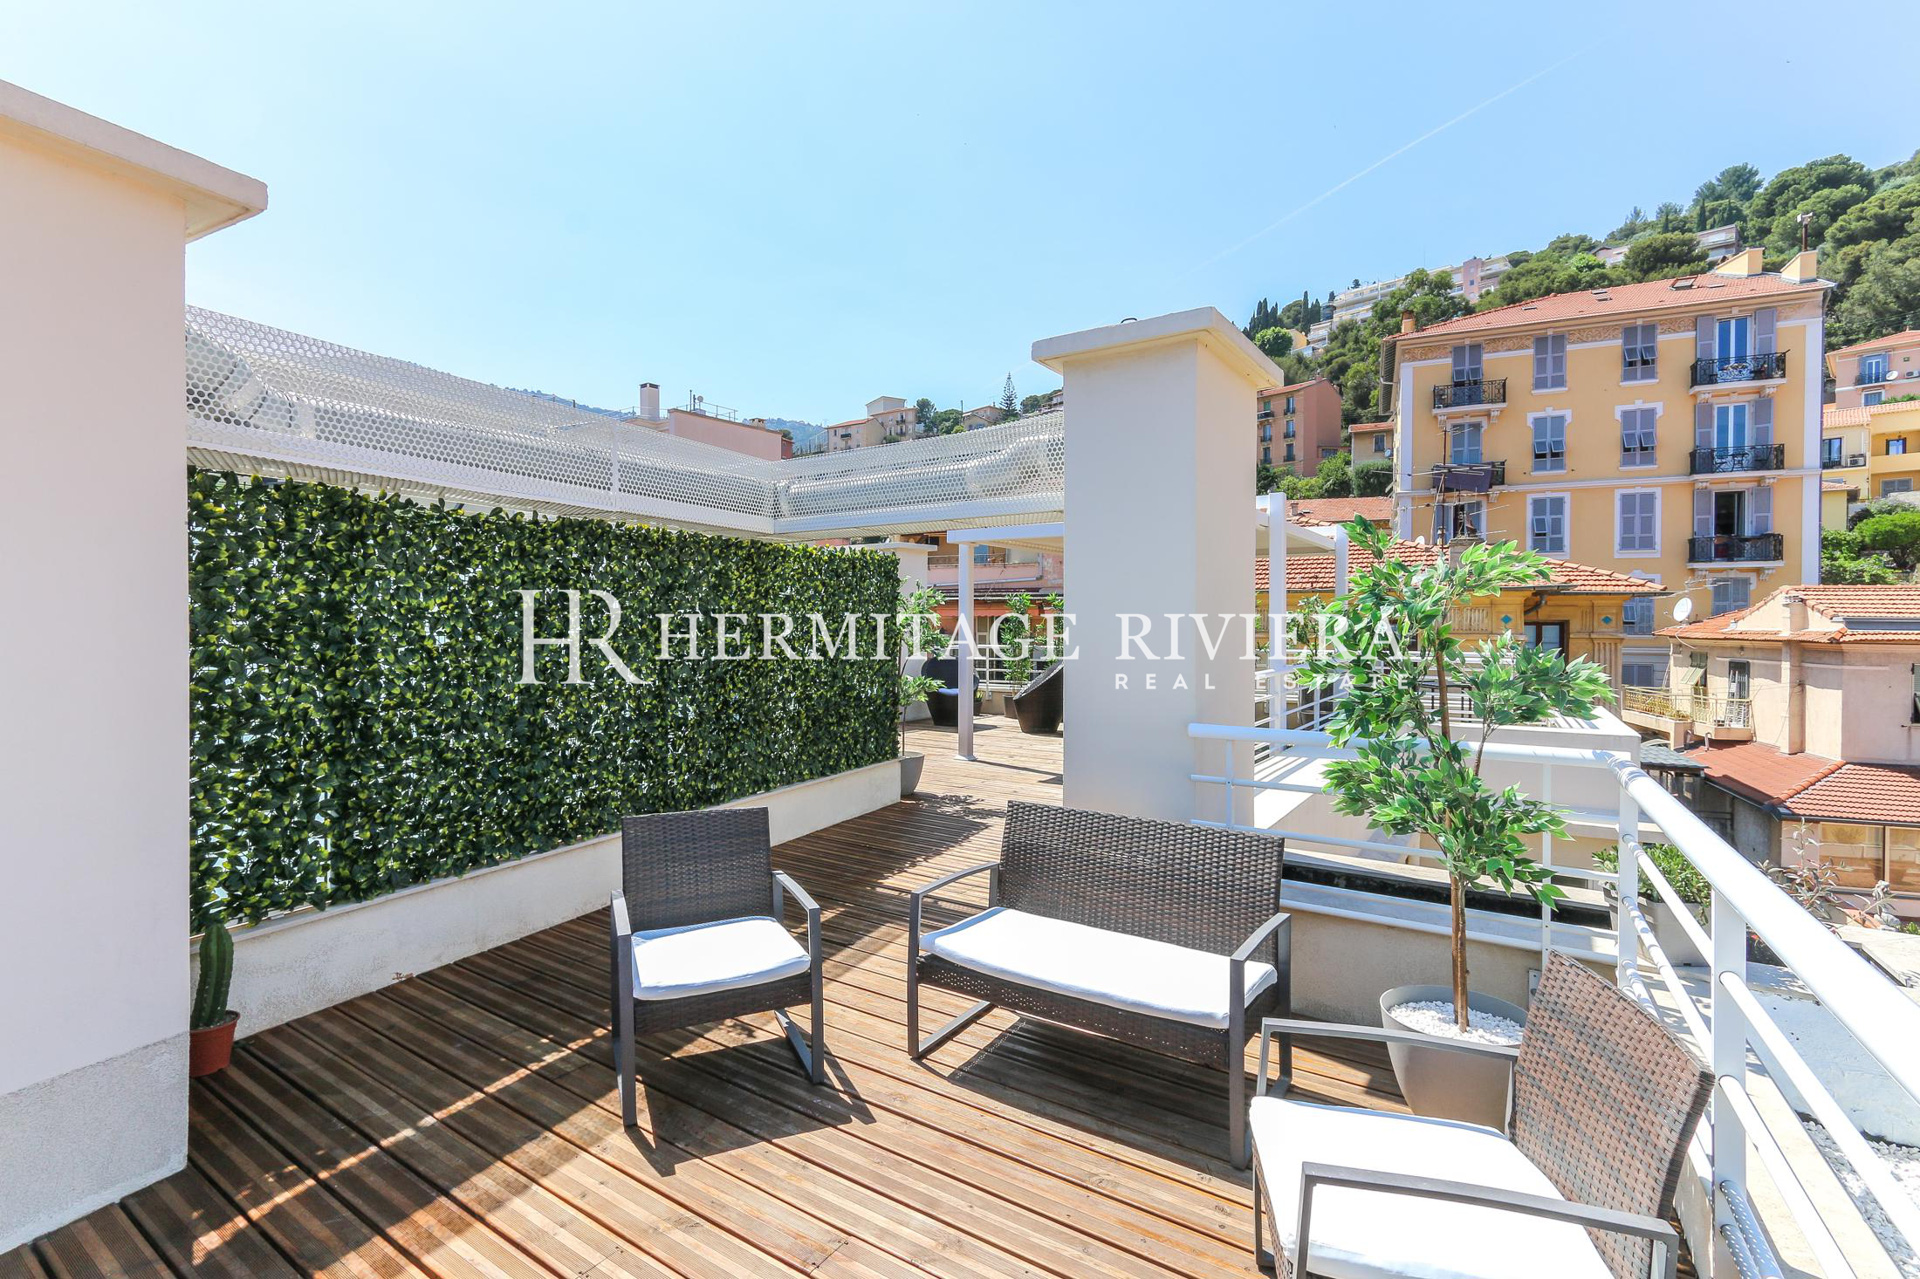 Penthouse-duplex renovated overlooking Monaco (image 23)